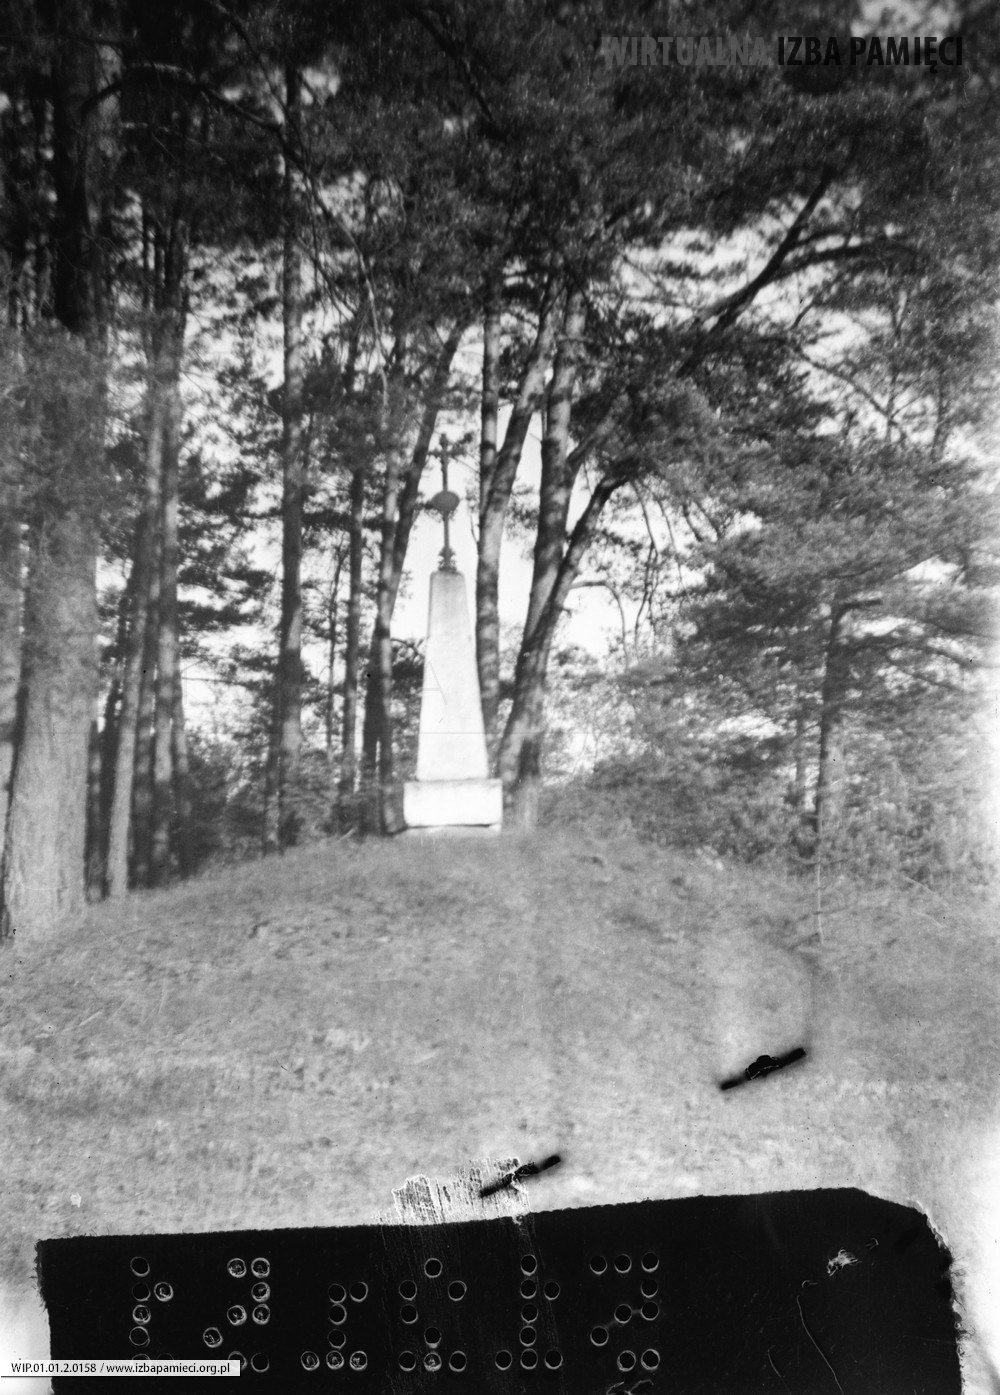 1970. Krzyż pomnik upamiętniający zniesienie pańszczyzny w 1848 roku (Mołodycz)